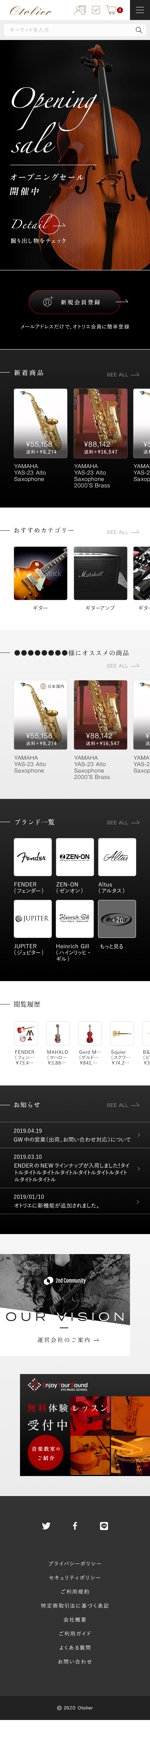 よしだちなみ (chinami_yoshida)さんの楽器の価格比較・通販サイト「Otolier（オトリエ）」TOPページと商品詳細ページデザインへの提案